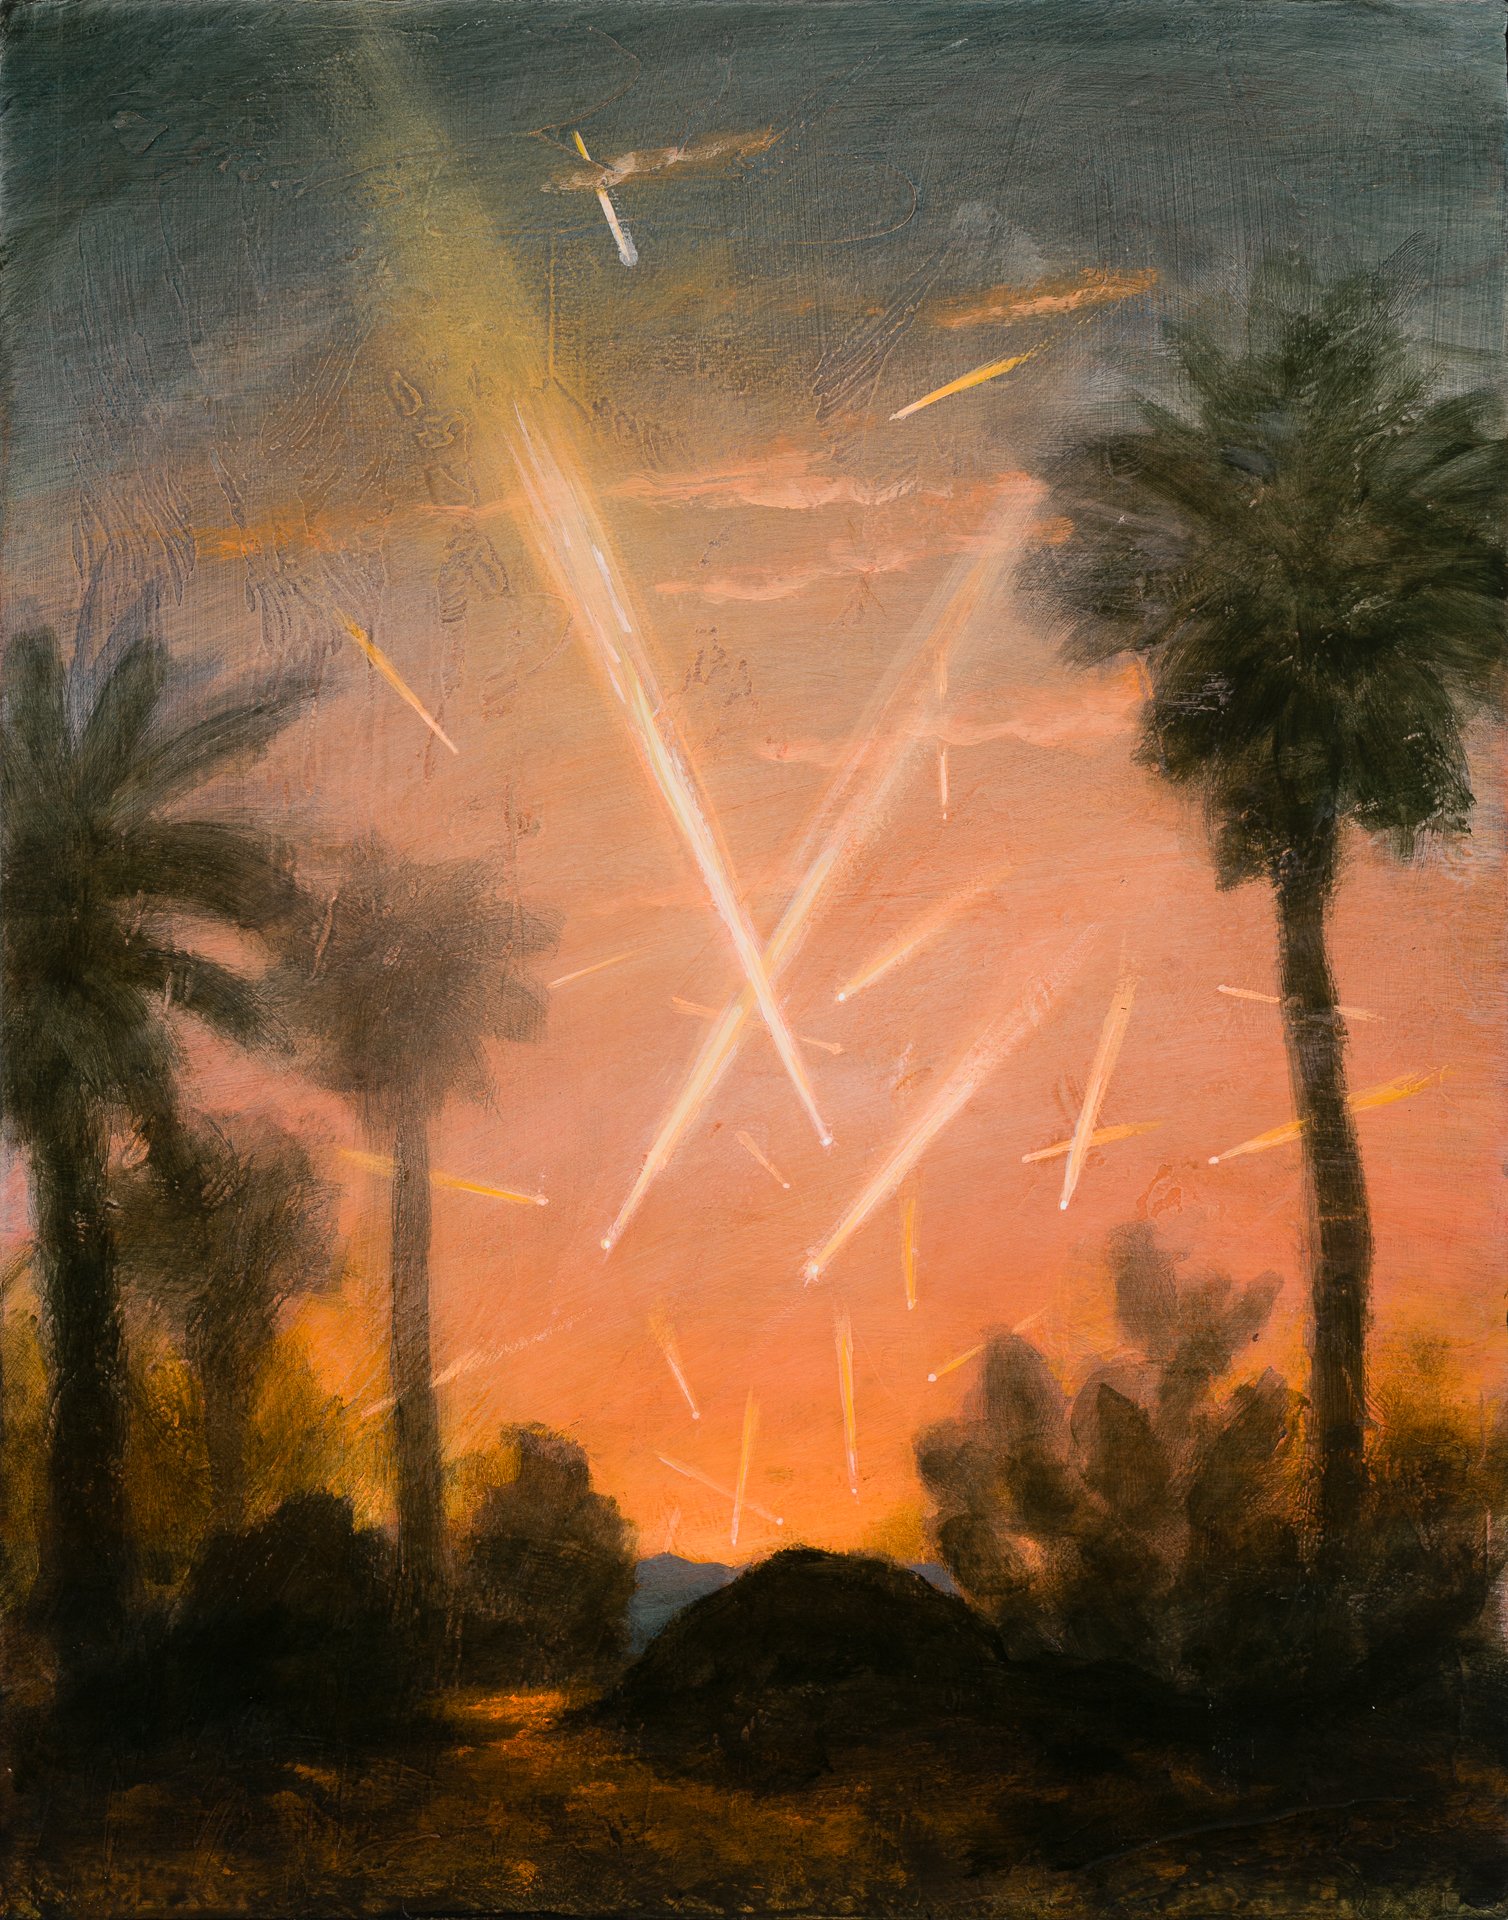 Meteors With Desert Garden, 14"x11"